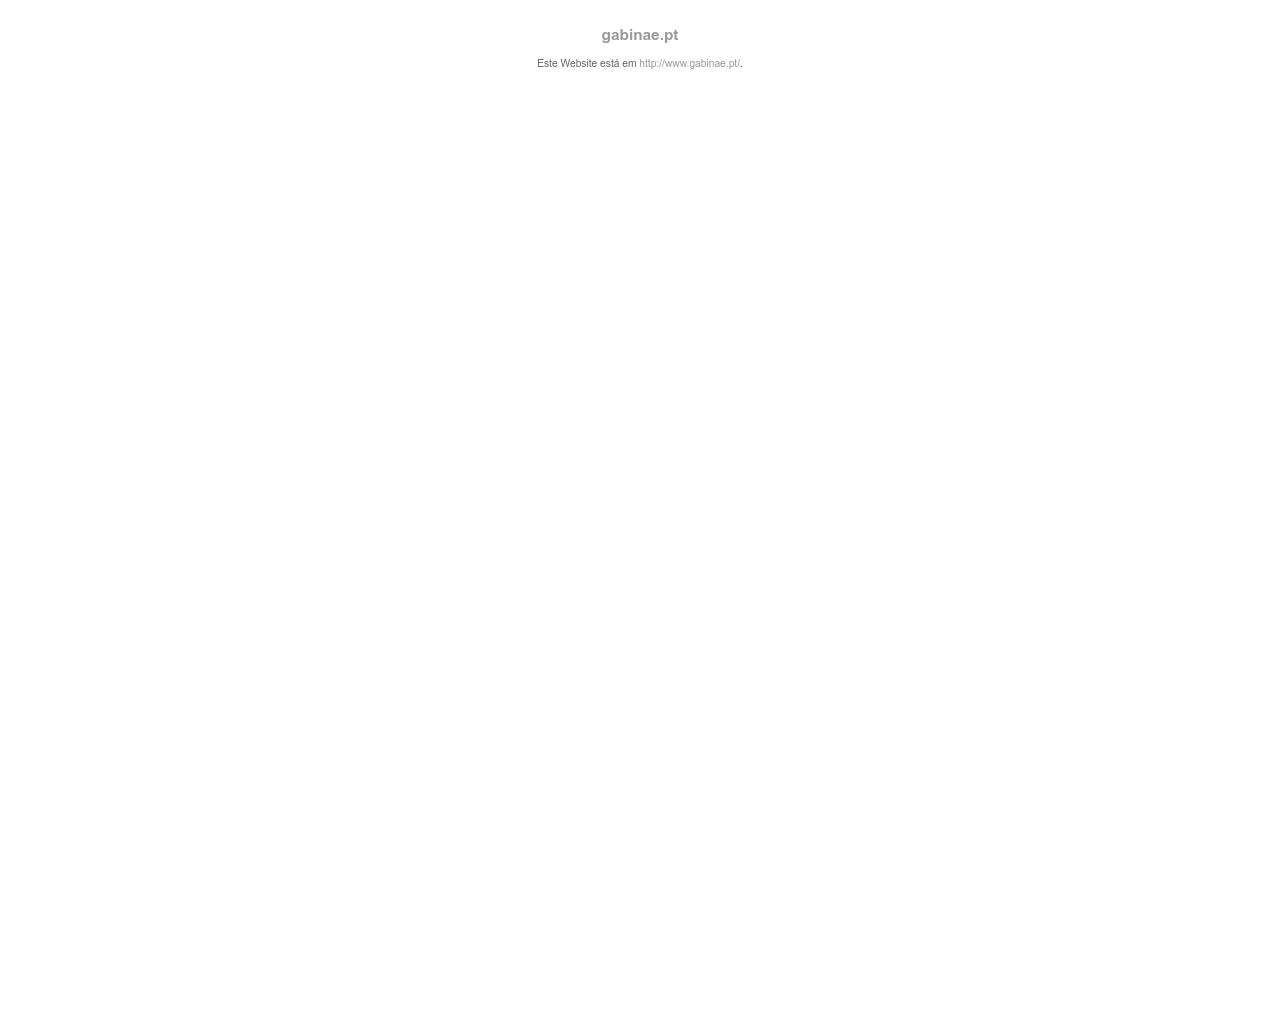 Site de imagem gabinae.pt em 1280x1024